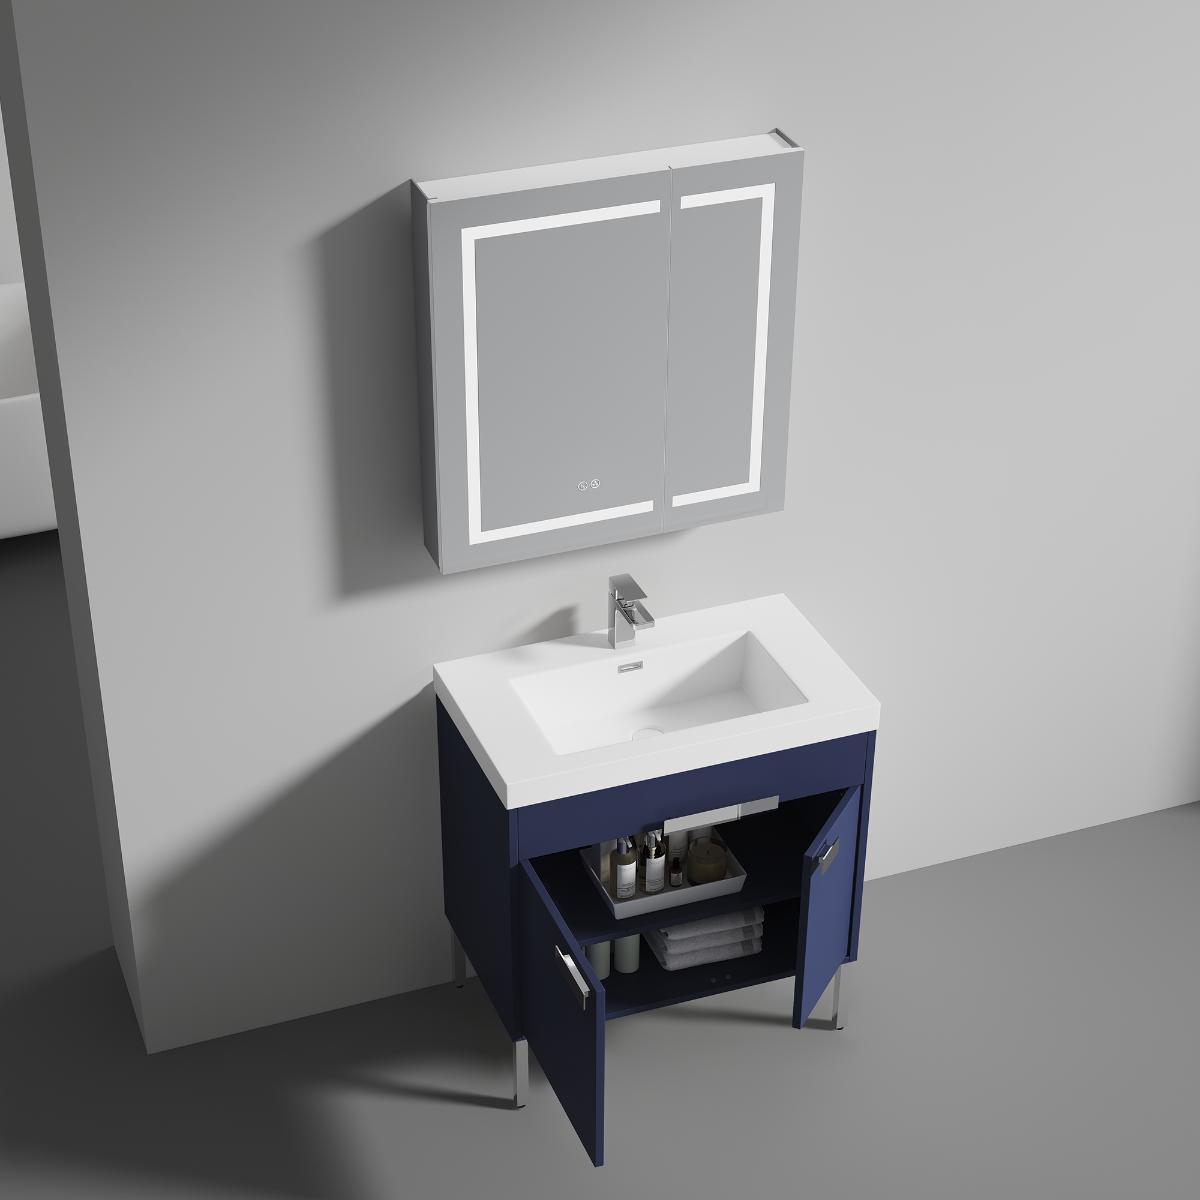 Bari 36" Bathroom Vanity  #size_36"  #color_navy blue